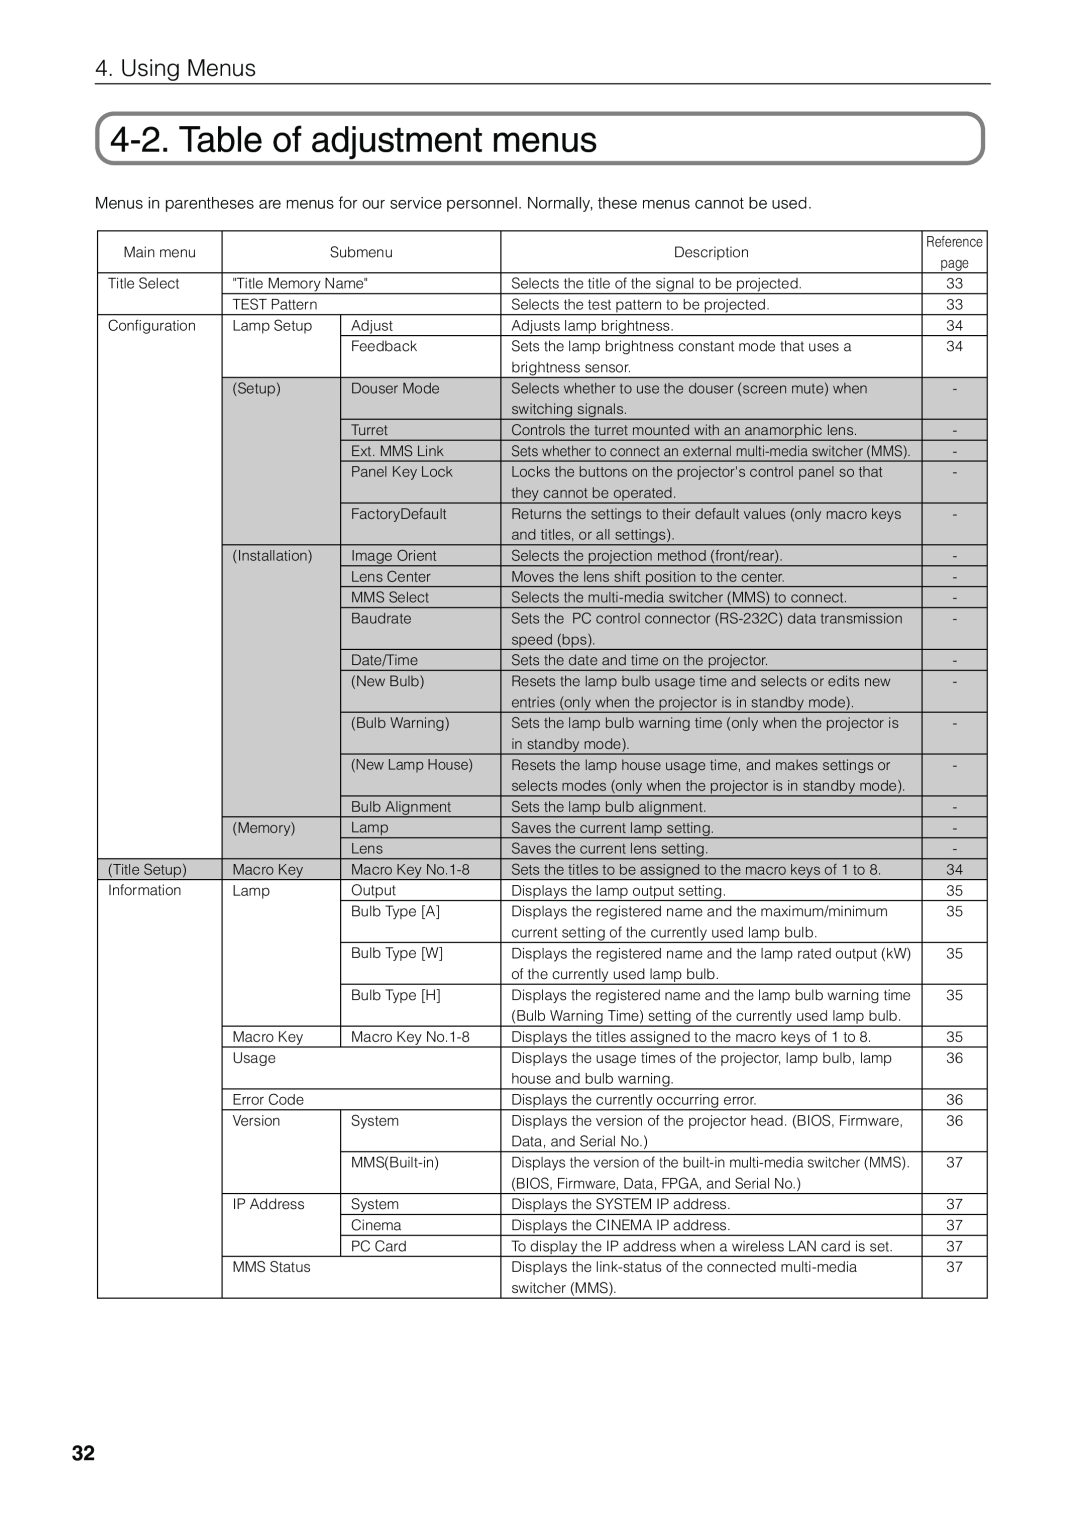 NEC NC1600C user manual Table of adjustment menus, Using Menus 